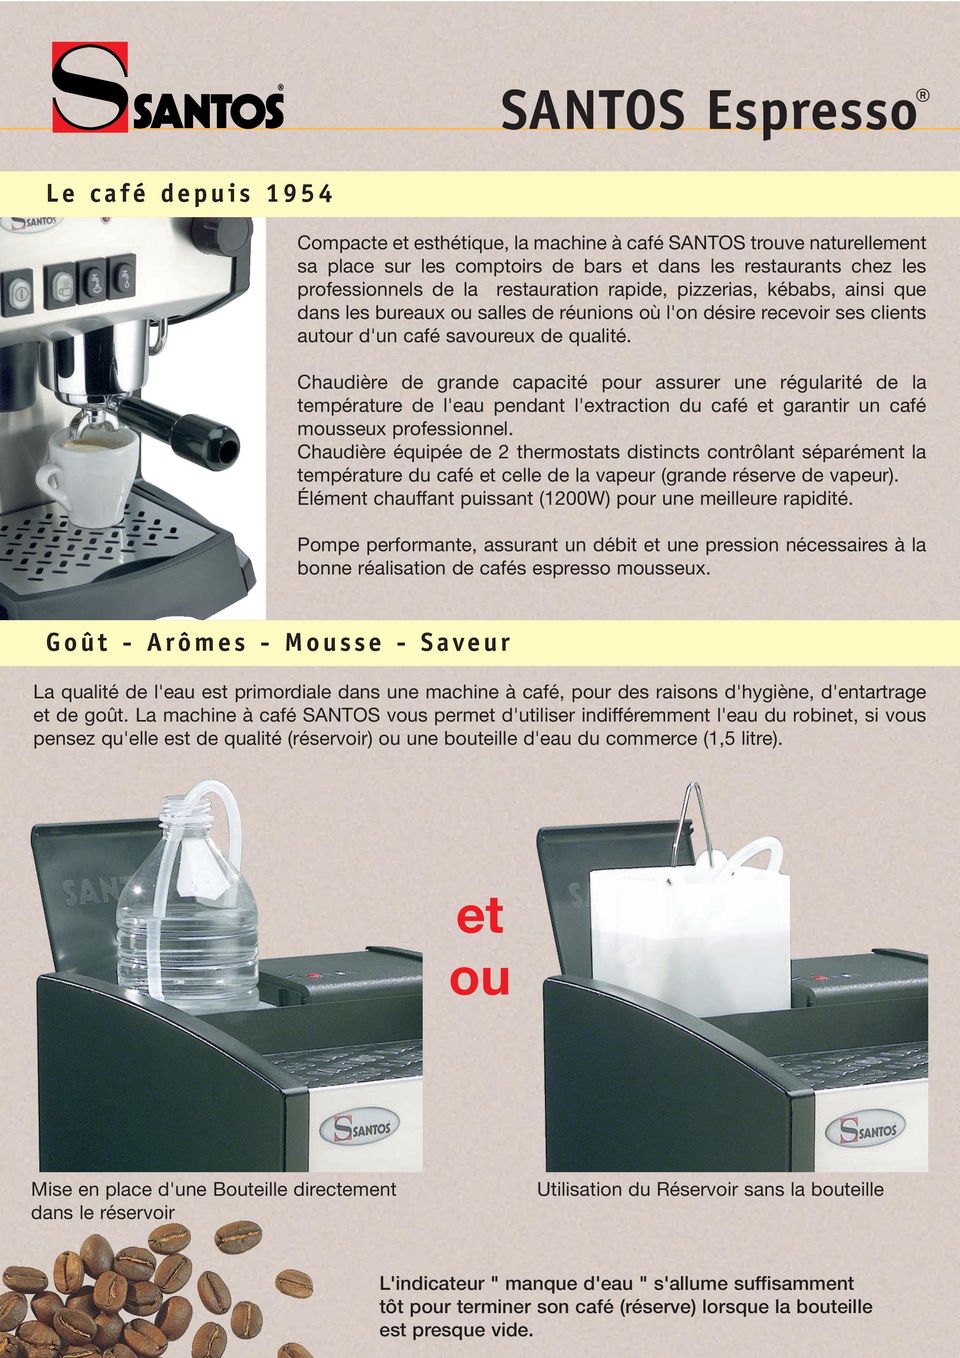 Chaudière de grande capacité pour assurer une régularité de la température de l'eau pendant l'extraction du café et garantir un café mousseux professionnel.